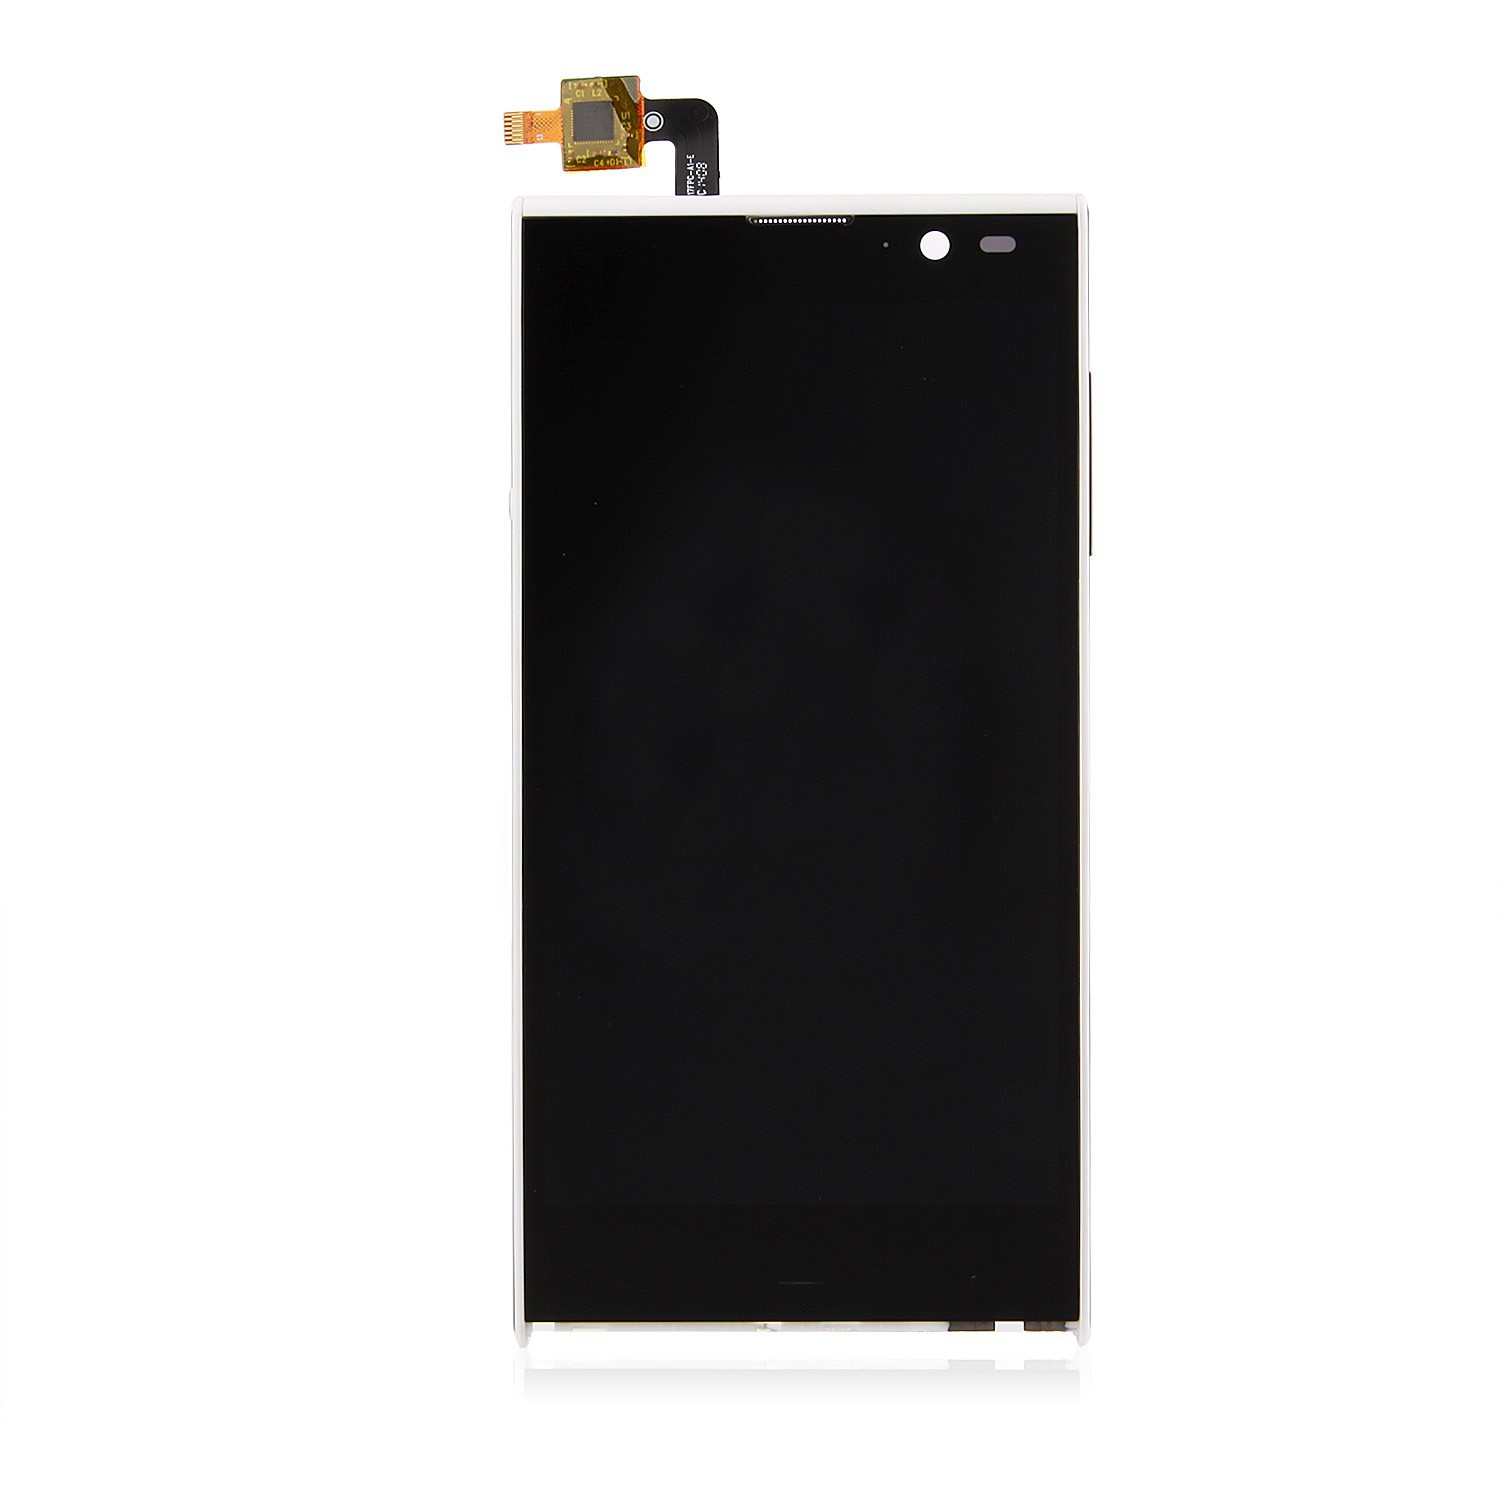 Nexus 7 Tab Display Repair and Replacement In Chennai